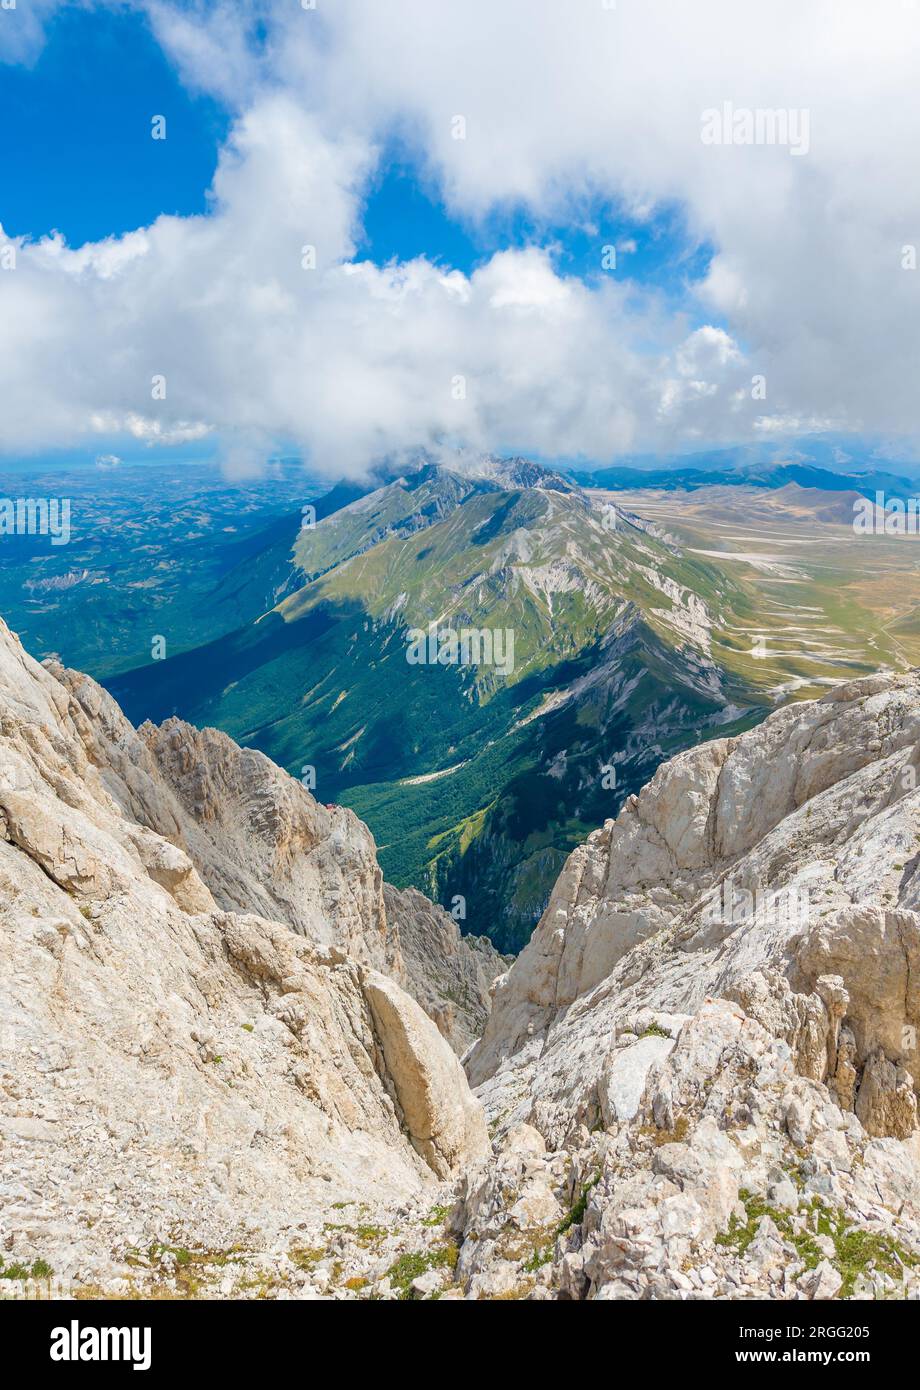 Gran Sasso, Italie - la voie alpiniste à Vetta Occidentale de Corno Grande, à 2912 mètres dans la région des Abruzzes, nommée via delle Creste ou Cresta Ovest. Banque D'Images